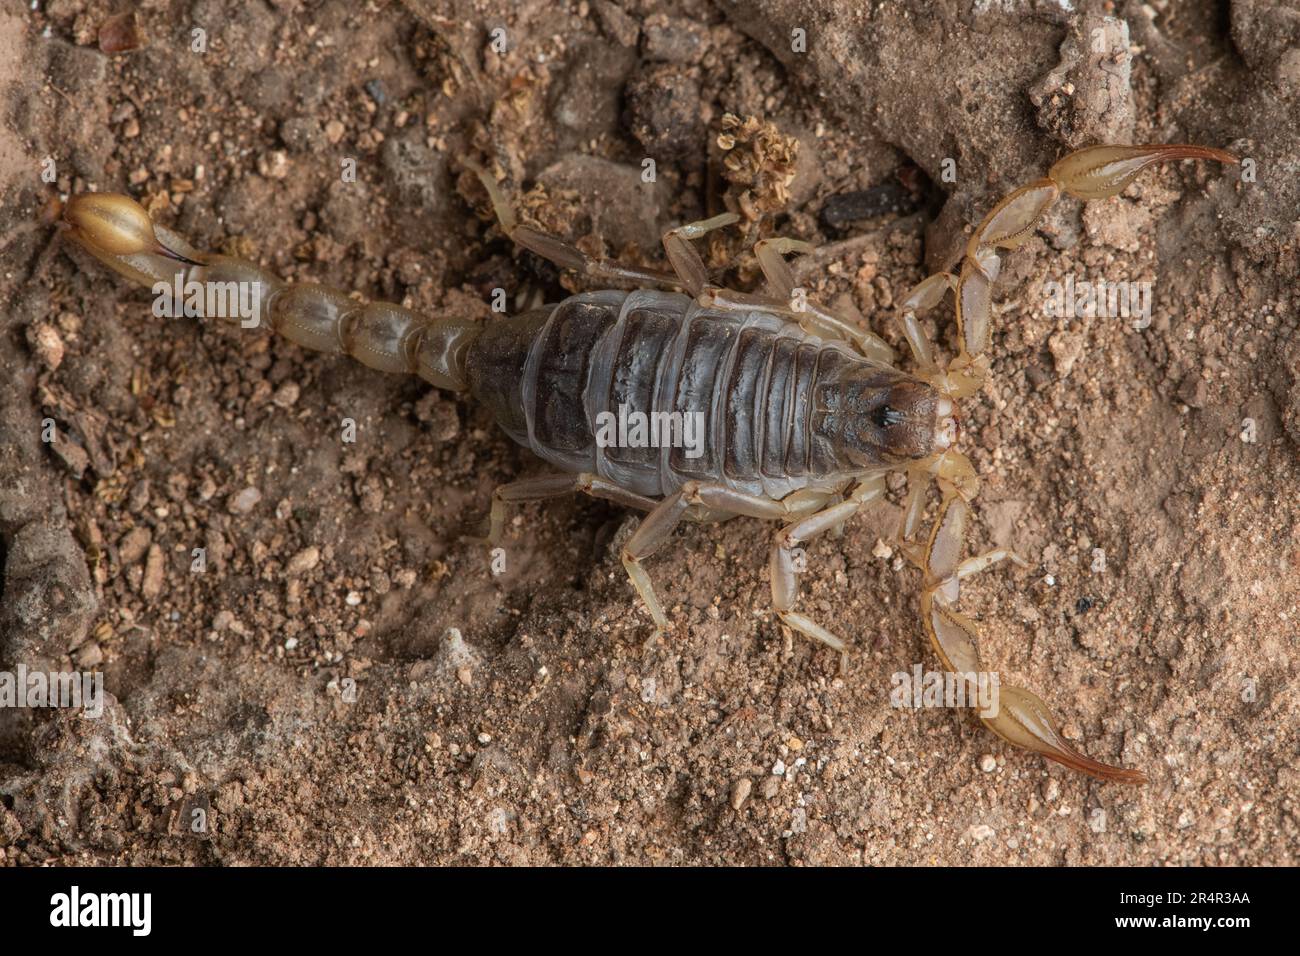 Scorpion commun de Californie - Paruroctonus silvestrii du comté de Contra Costa, Californie, États-Unis. Banque D'Images